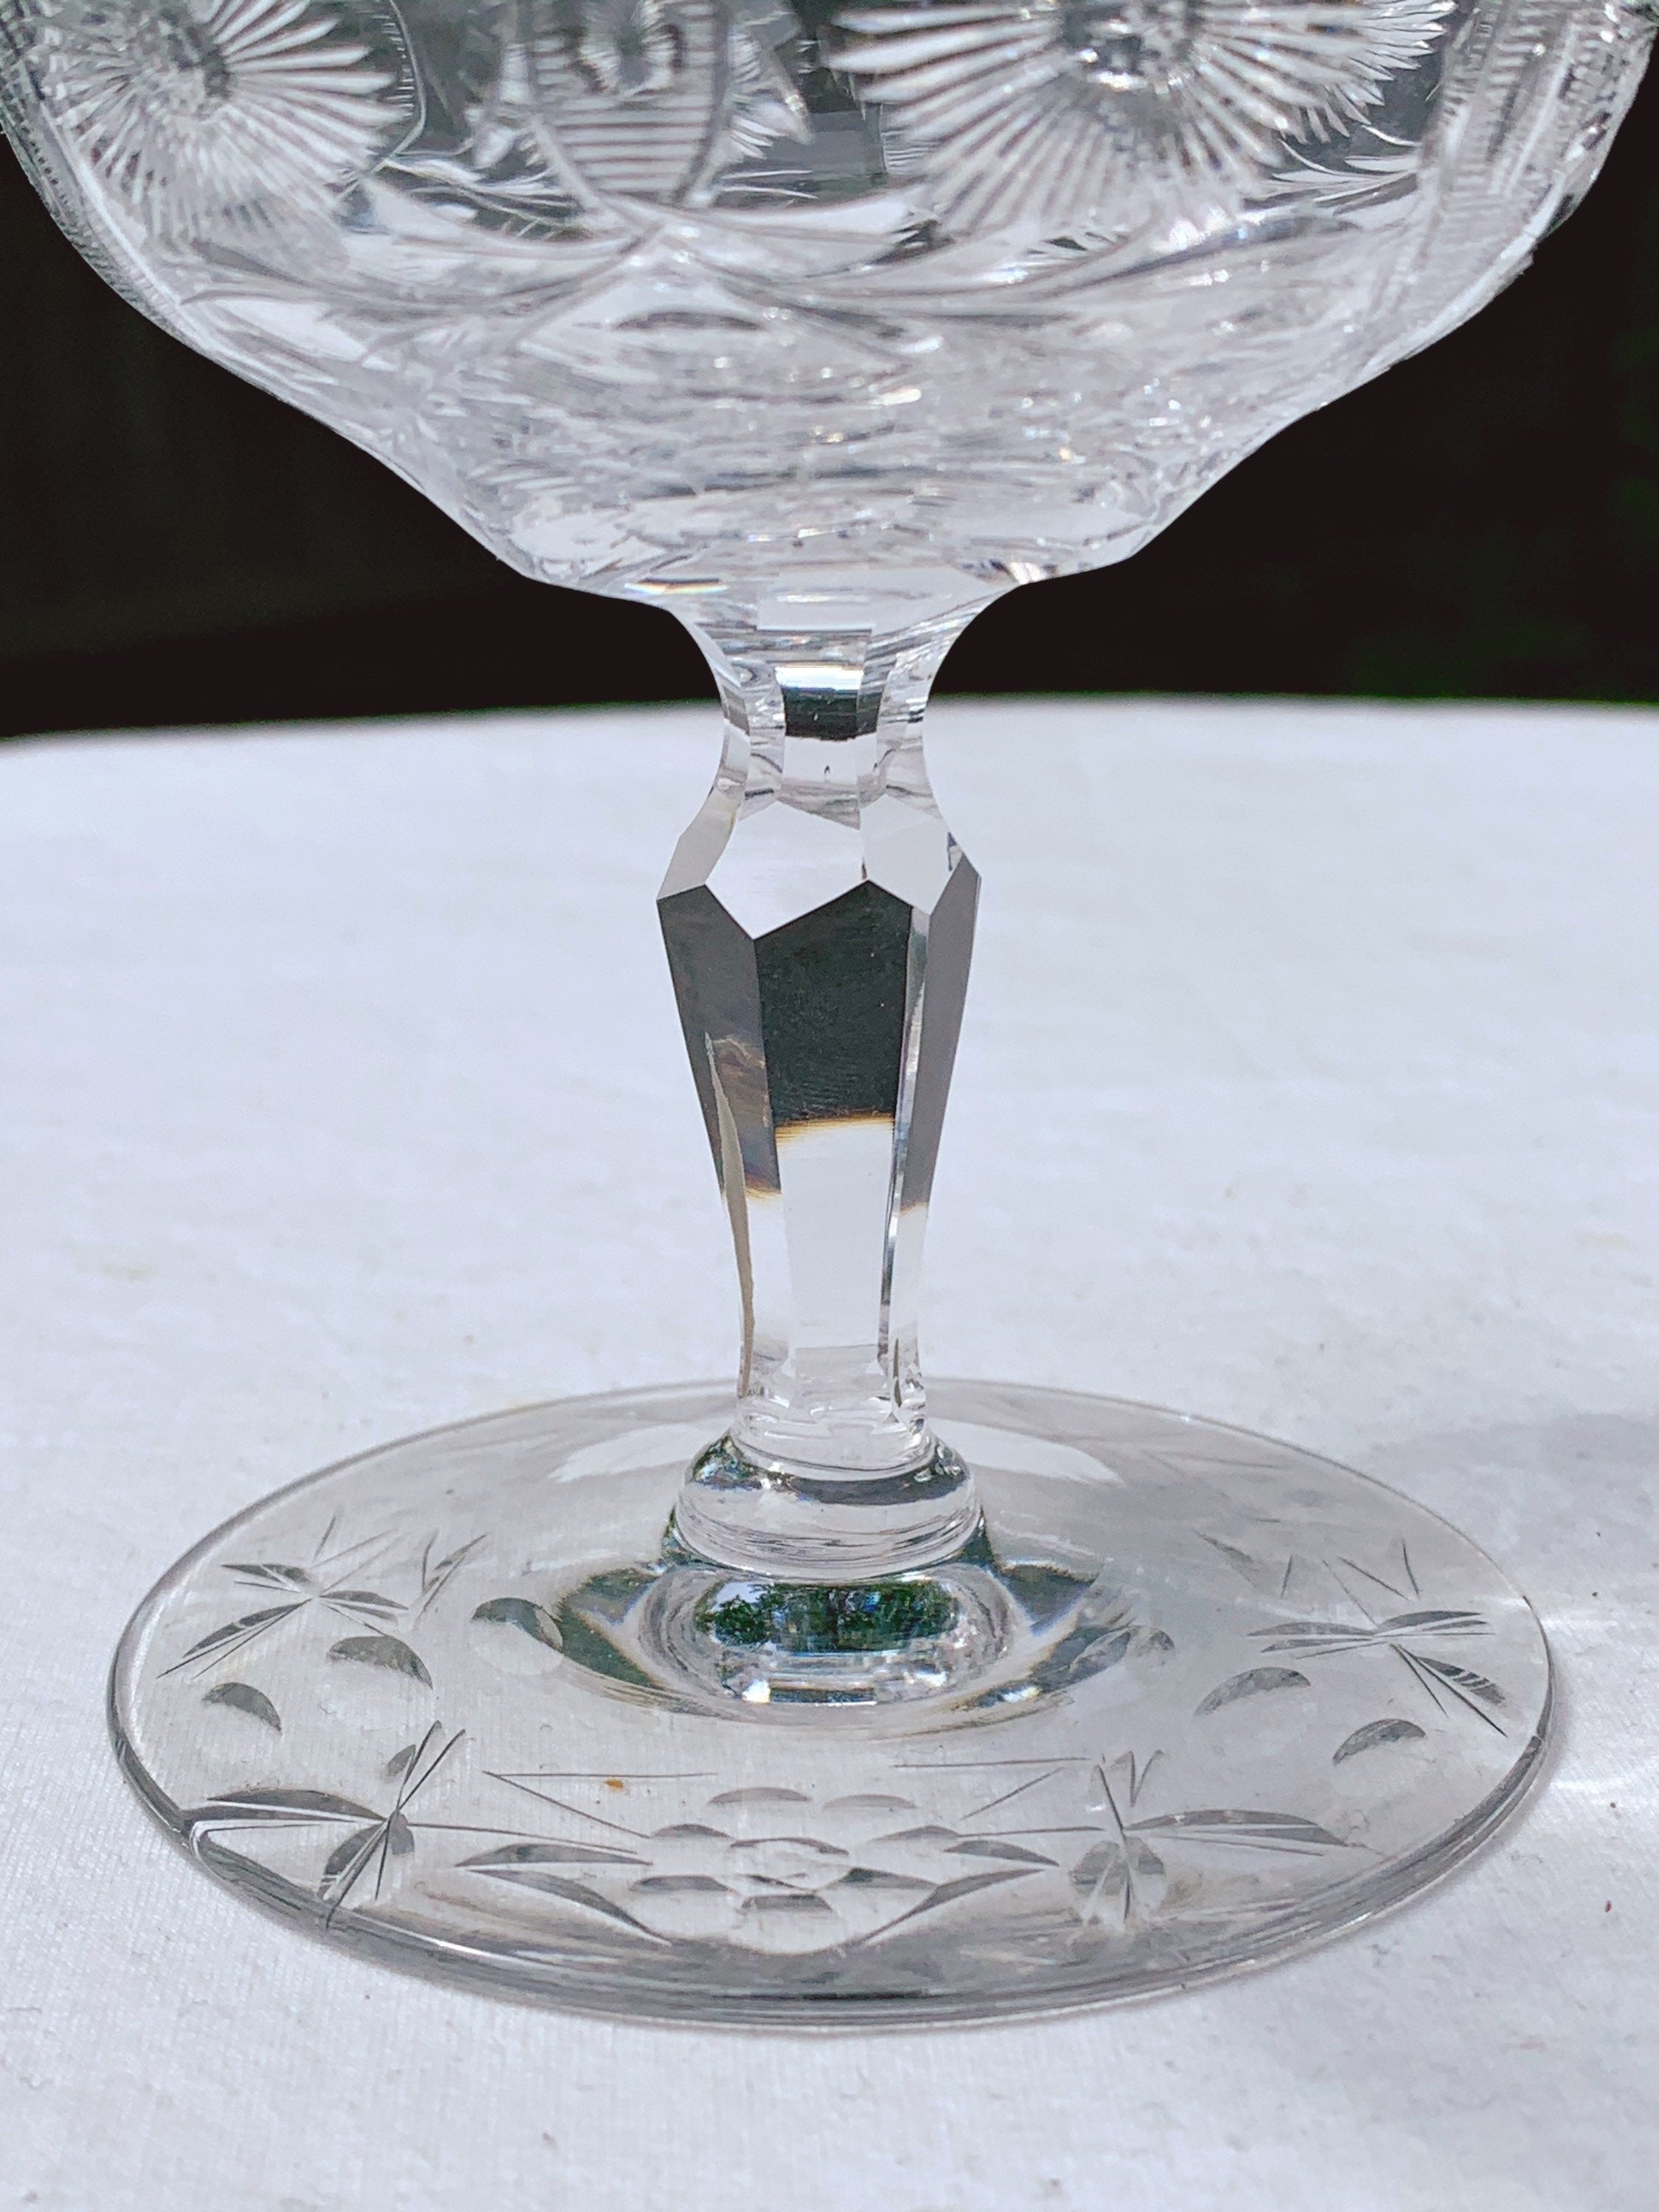 Vintage Floral Etched Clear Glass Cocktail, After Dinner Glasses- Set of 6